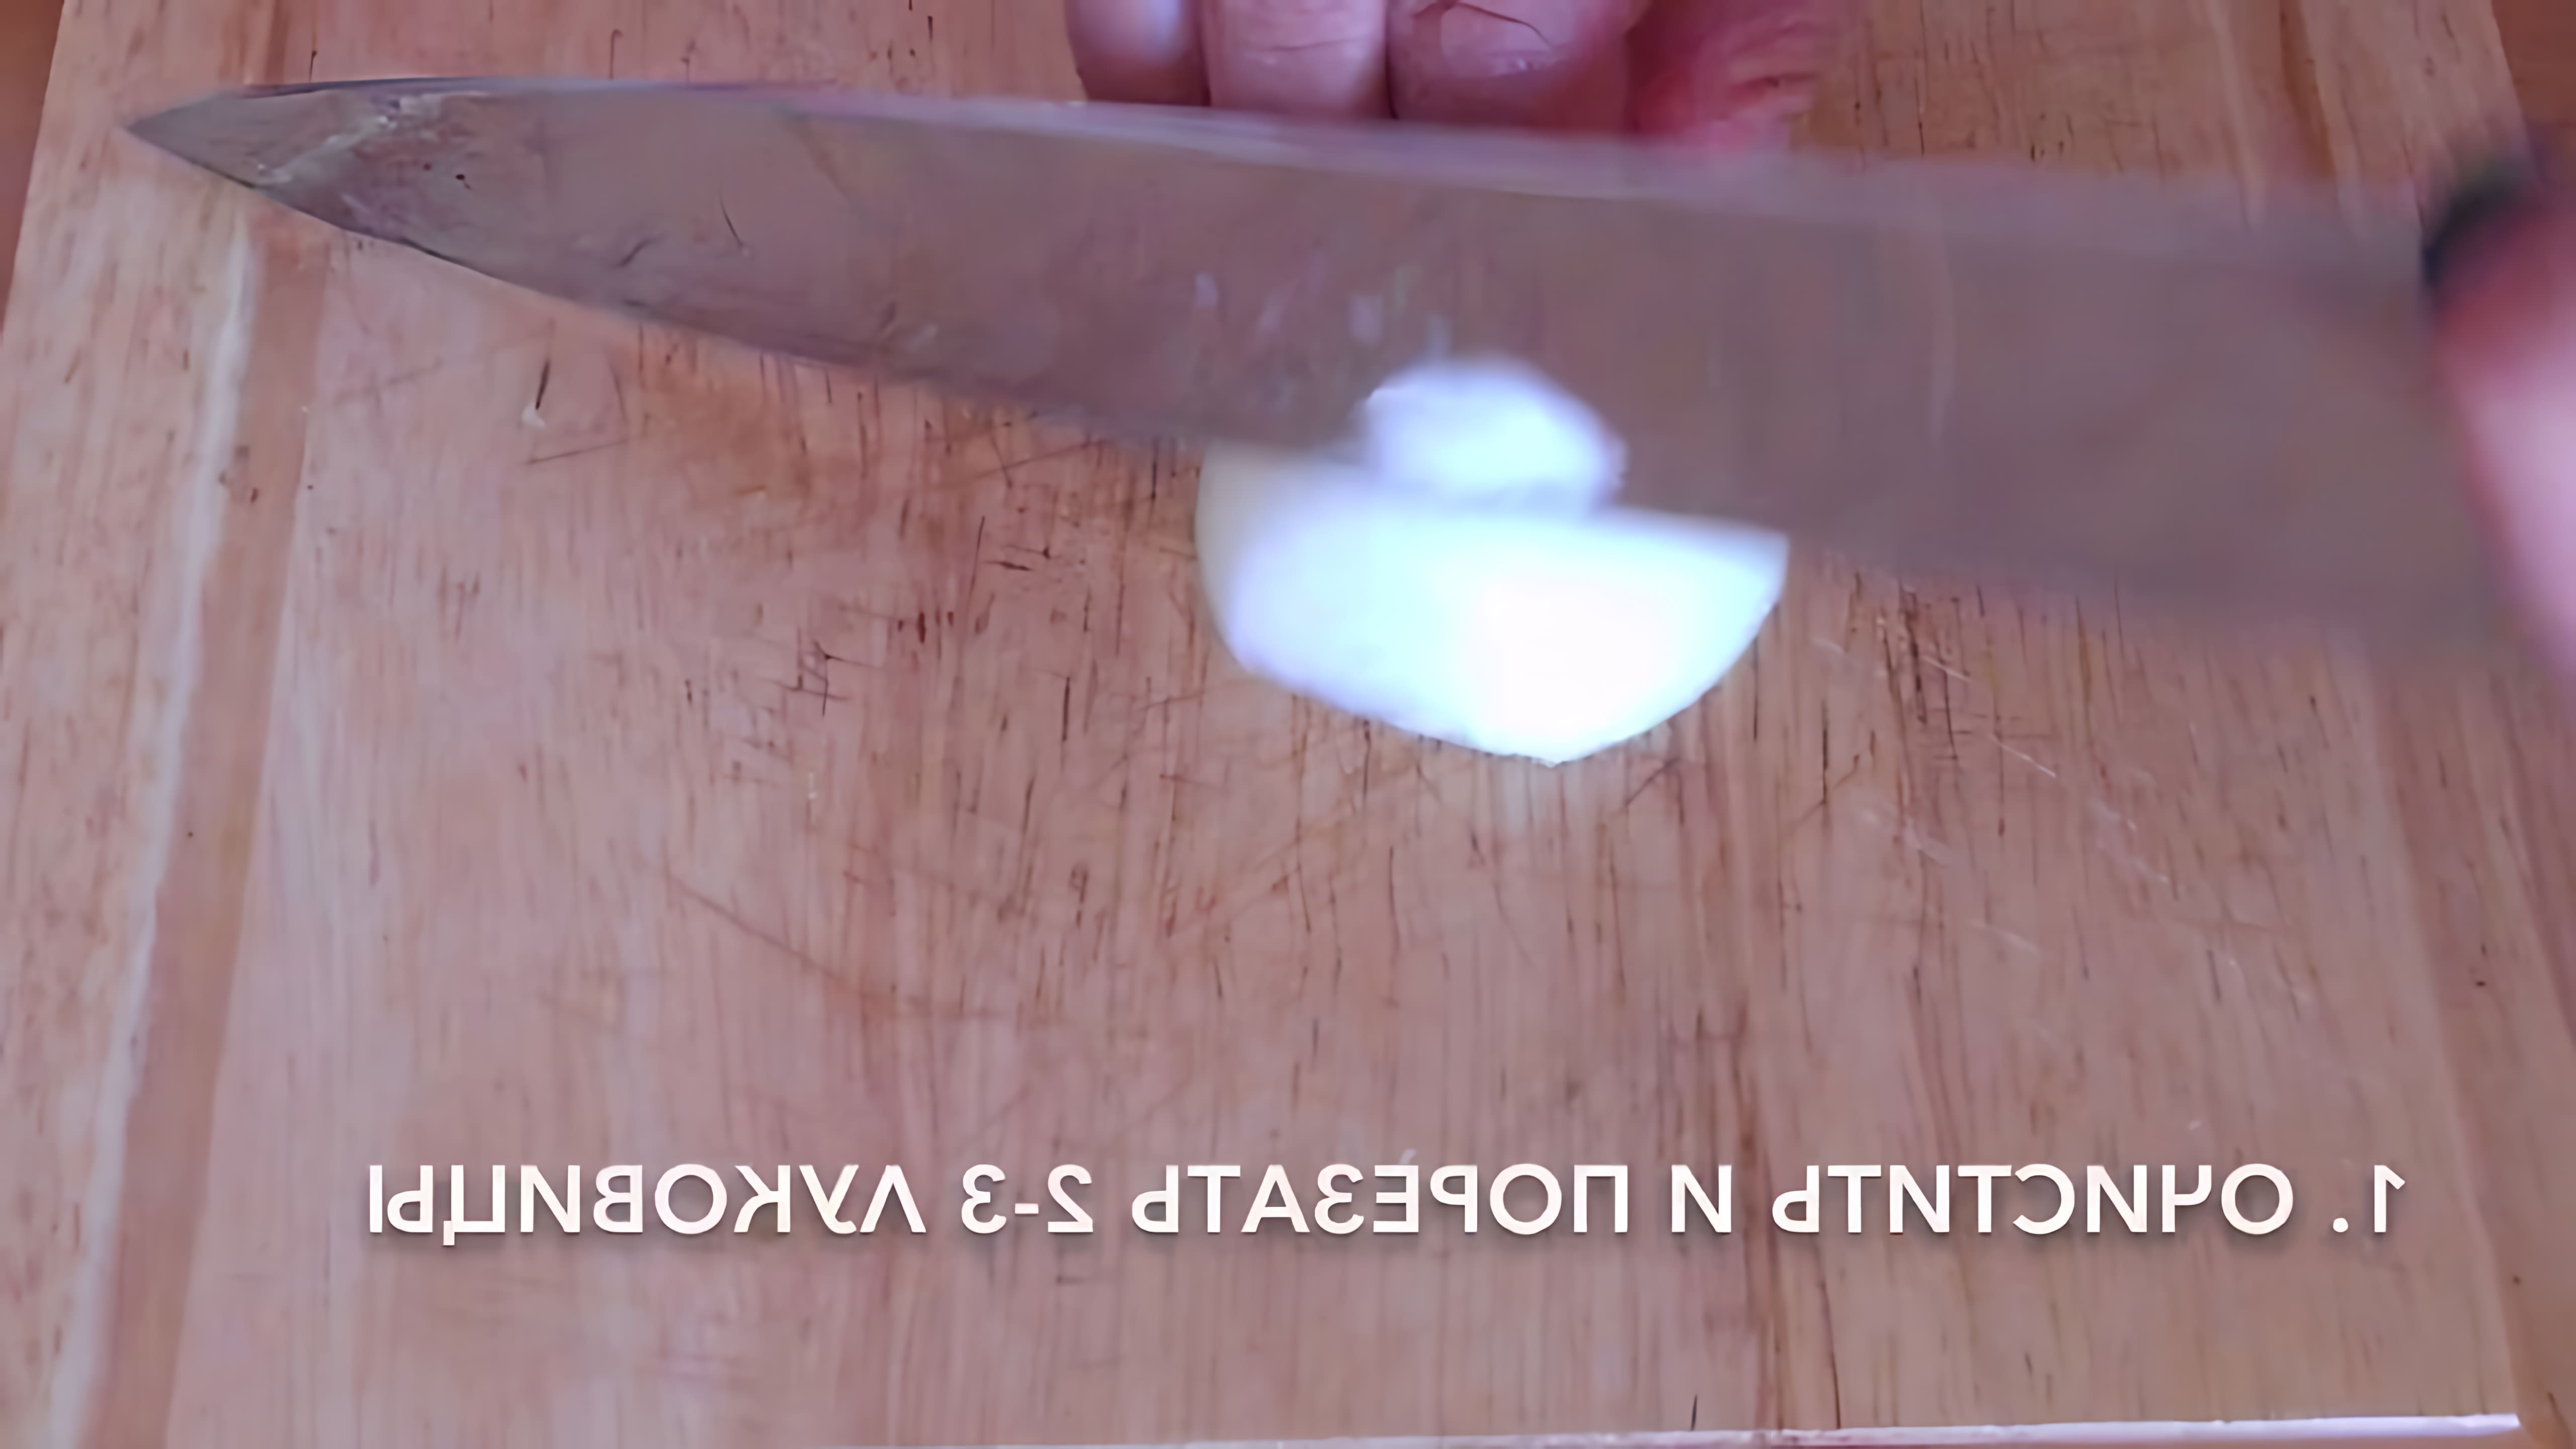 В этом видео-ролике демонстрируется процесс приготовления вкусного и простого блюда - говядины с луком в сметанном соусе